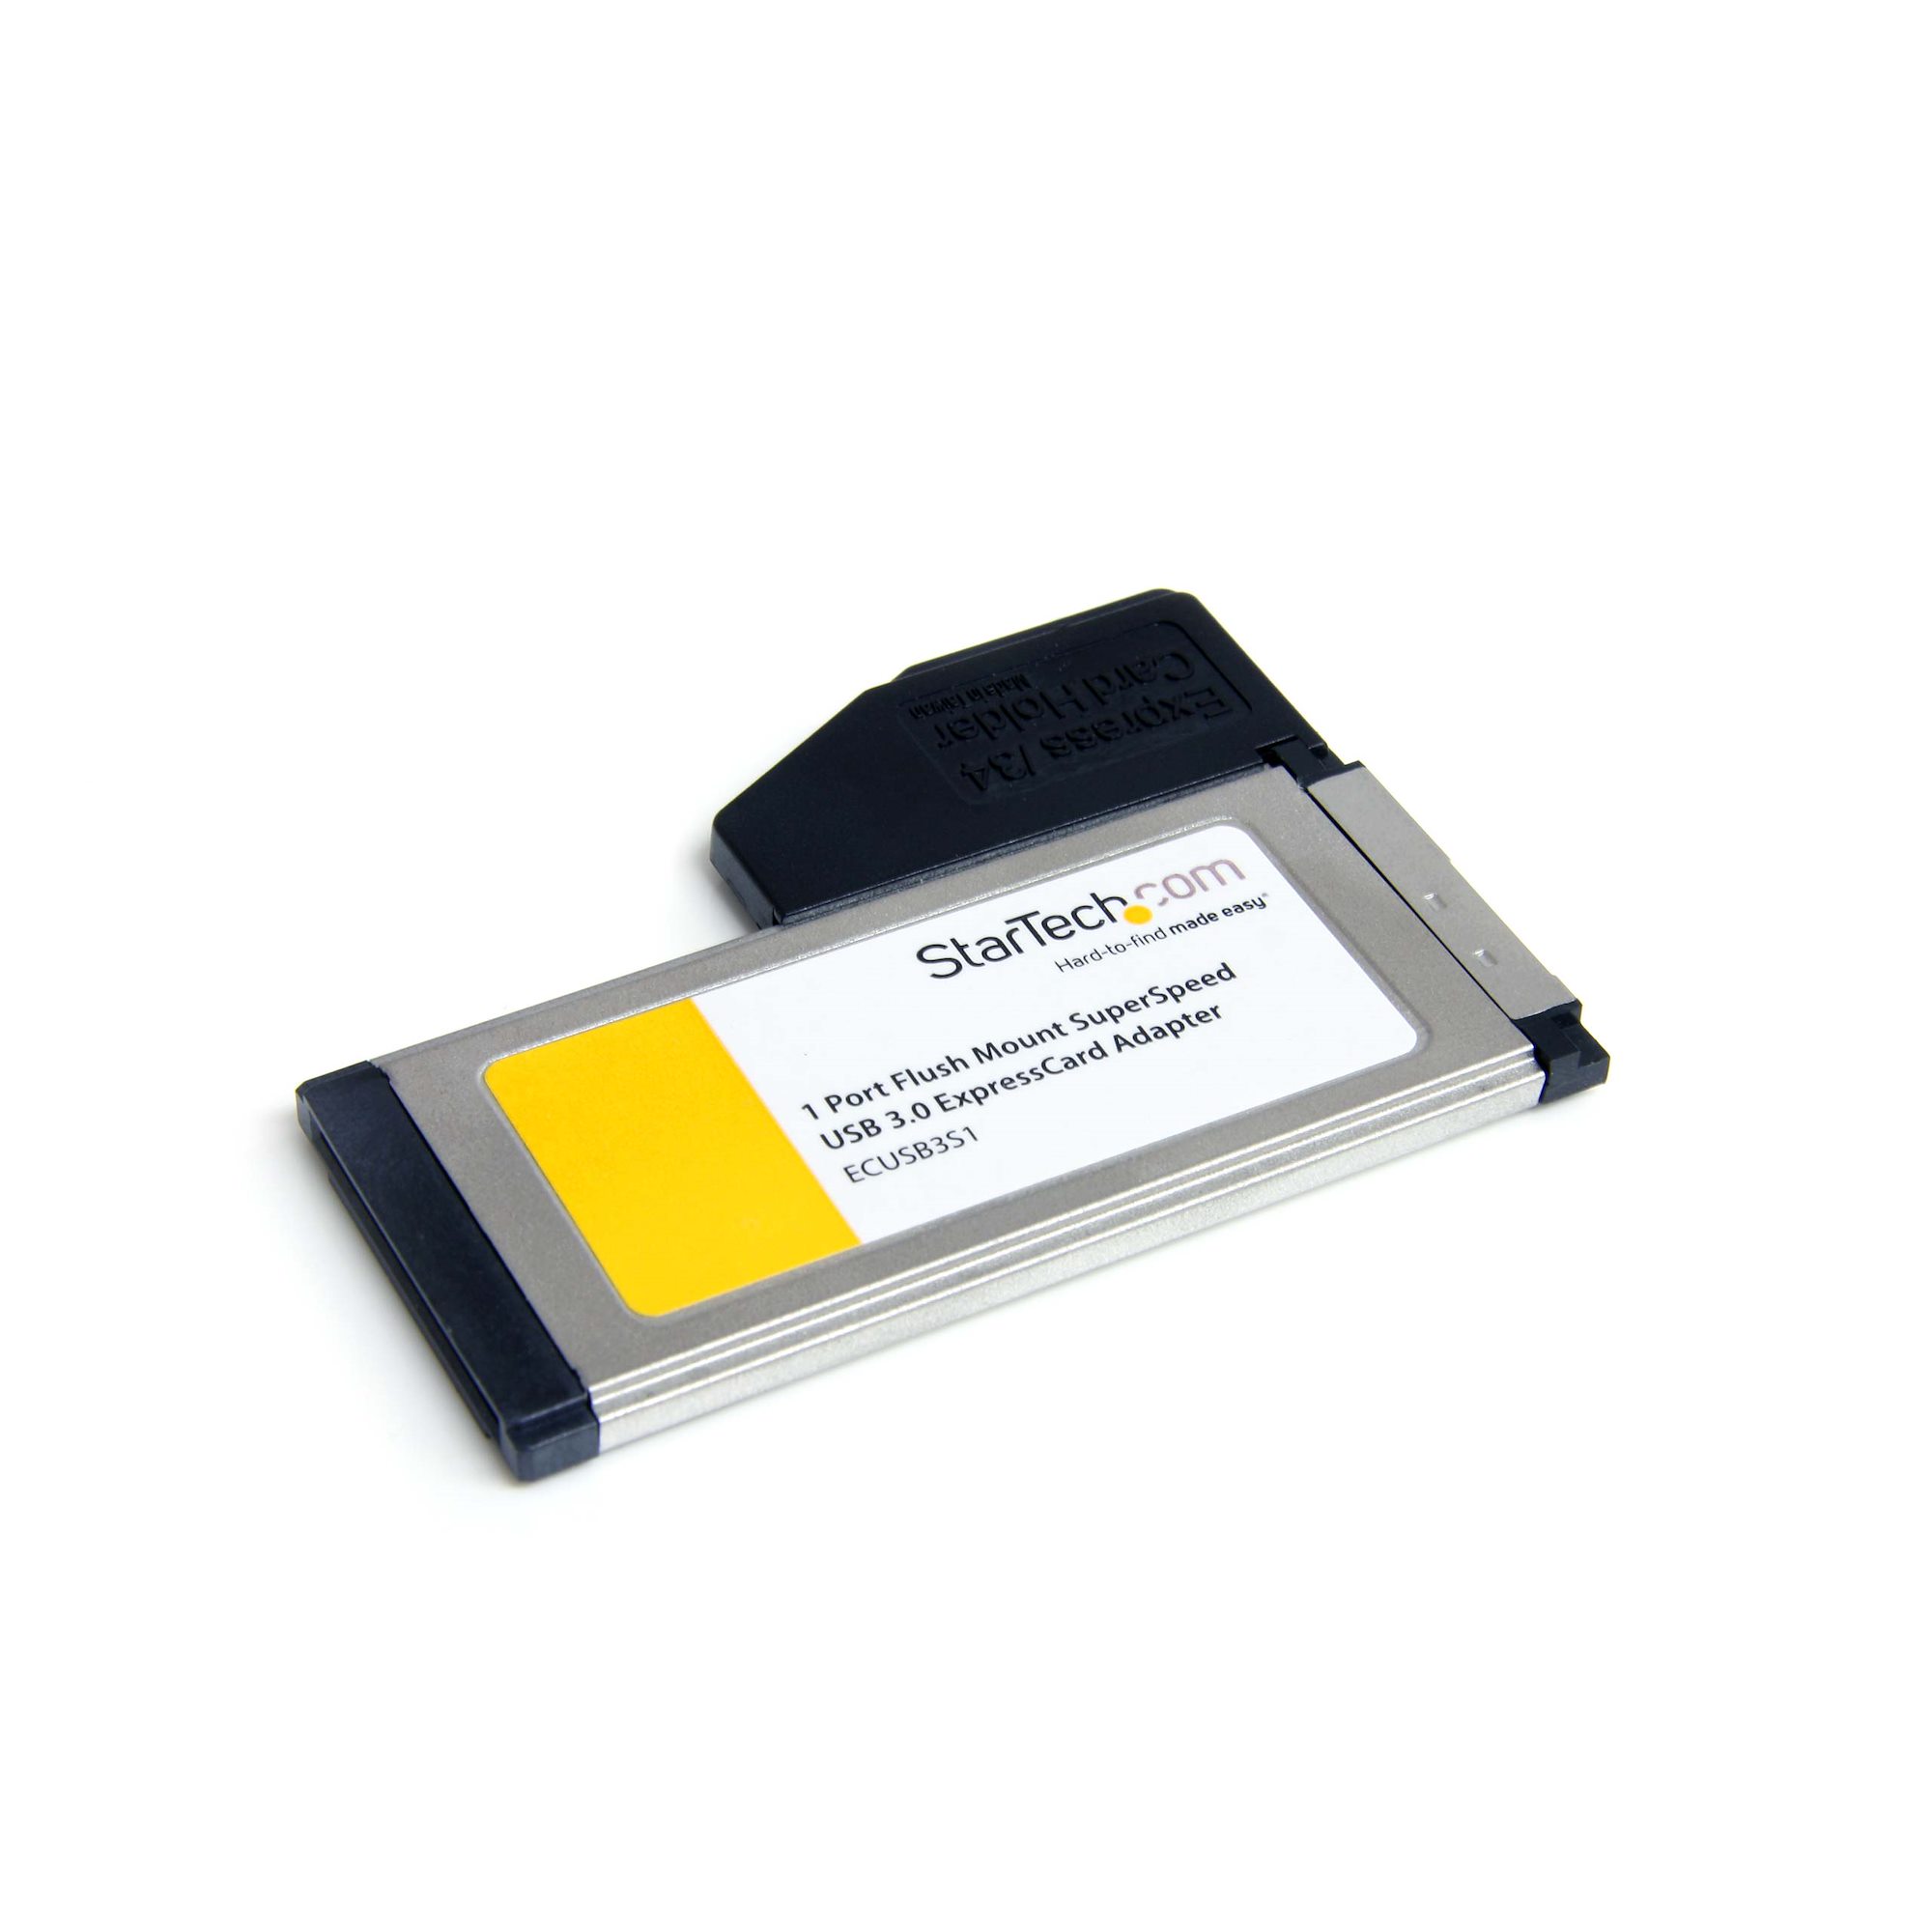 USB 3.0 Schnittstellenkarte für Laptop, USB 3.0 A StarTech.com 1 Port USB 3.0 ExpressCard mit UASP Unterstützung Buchse 